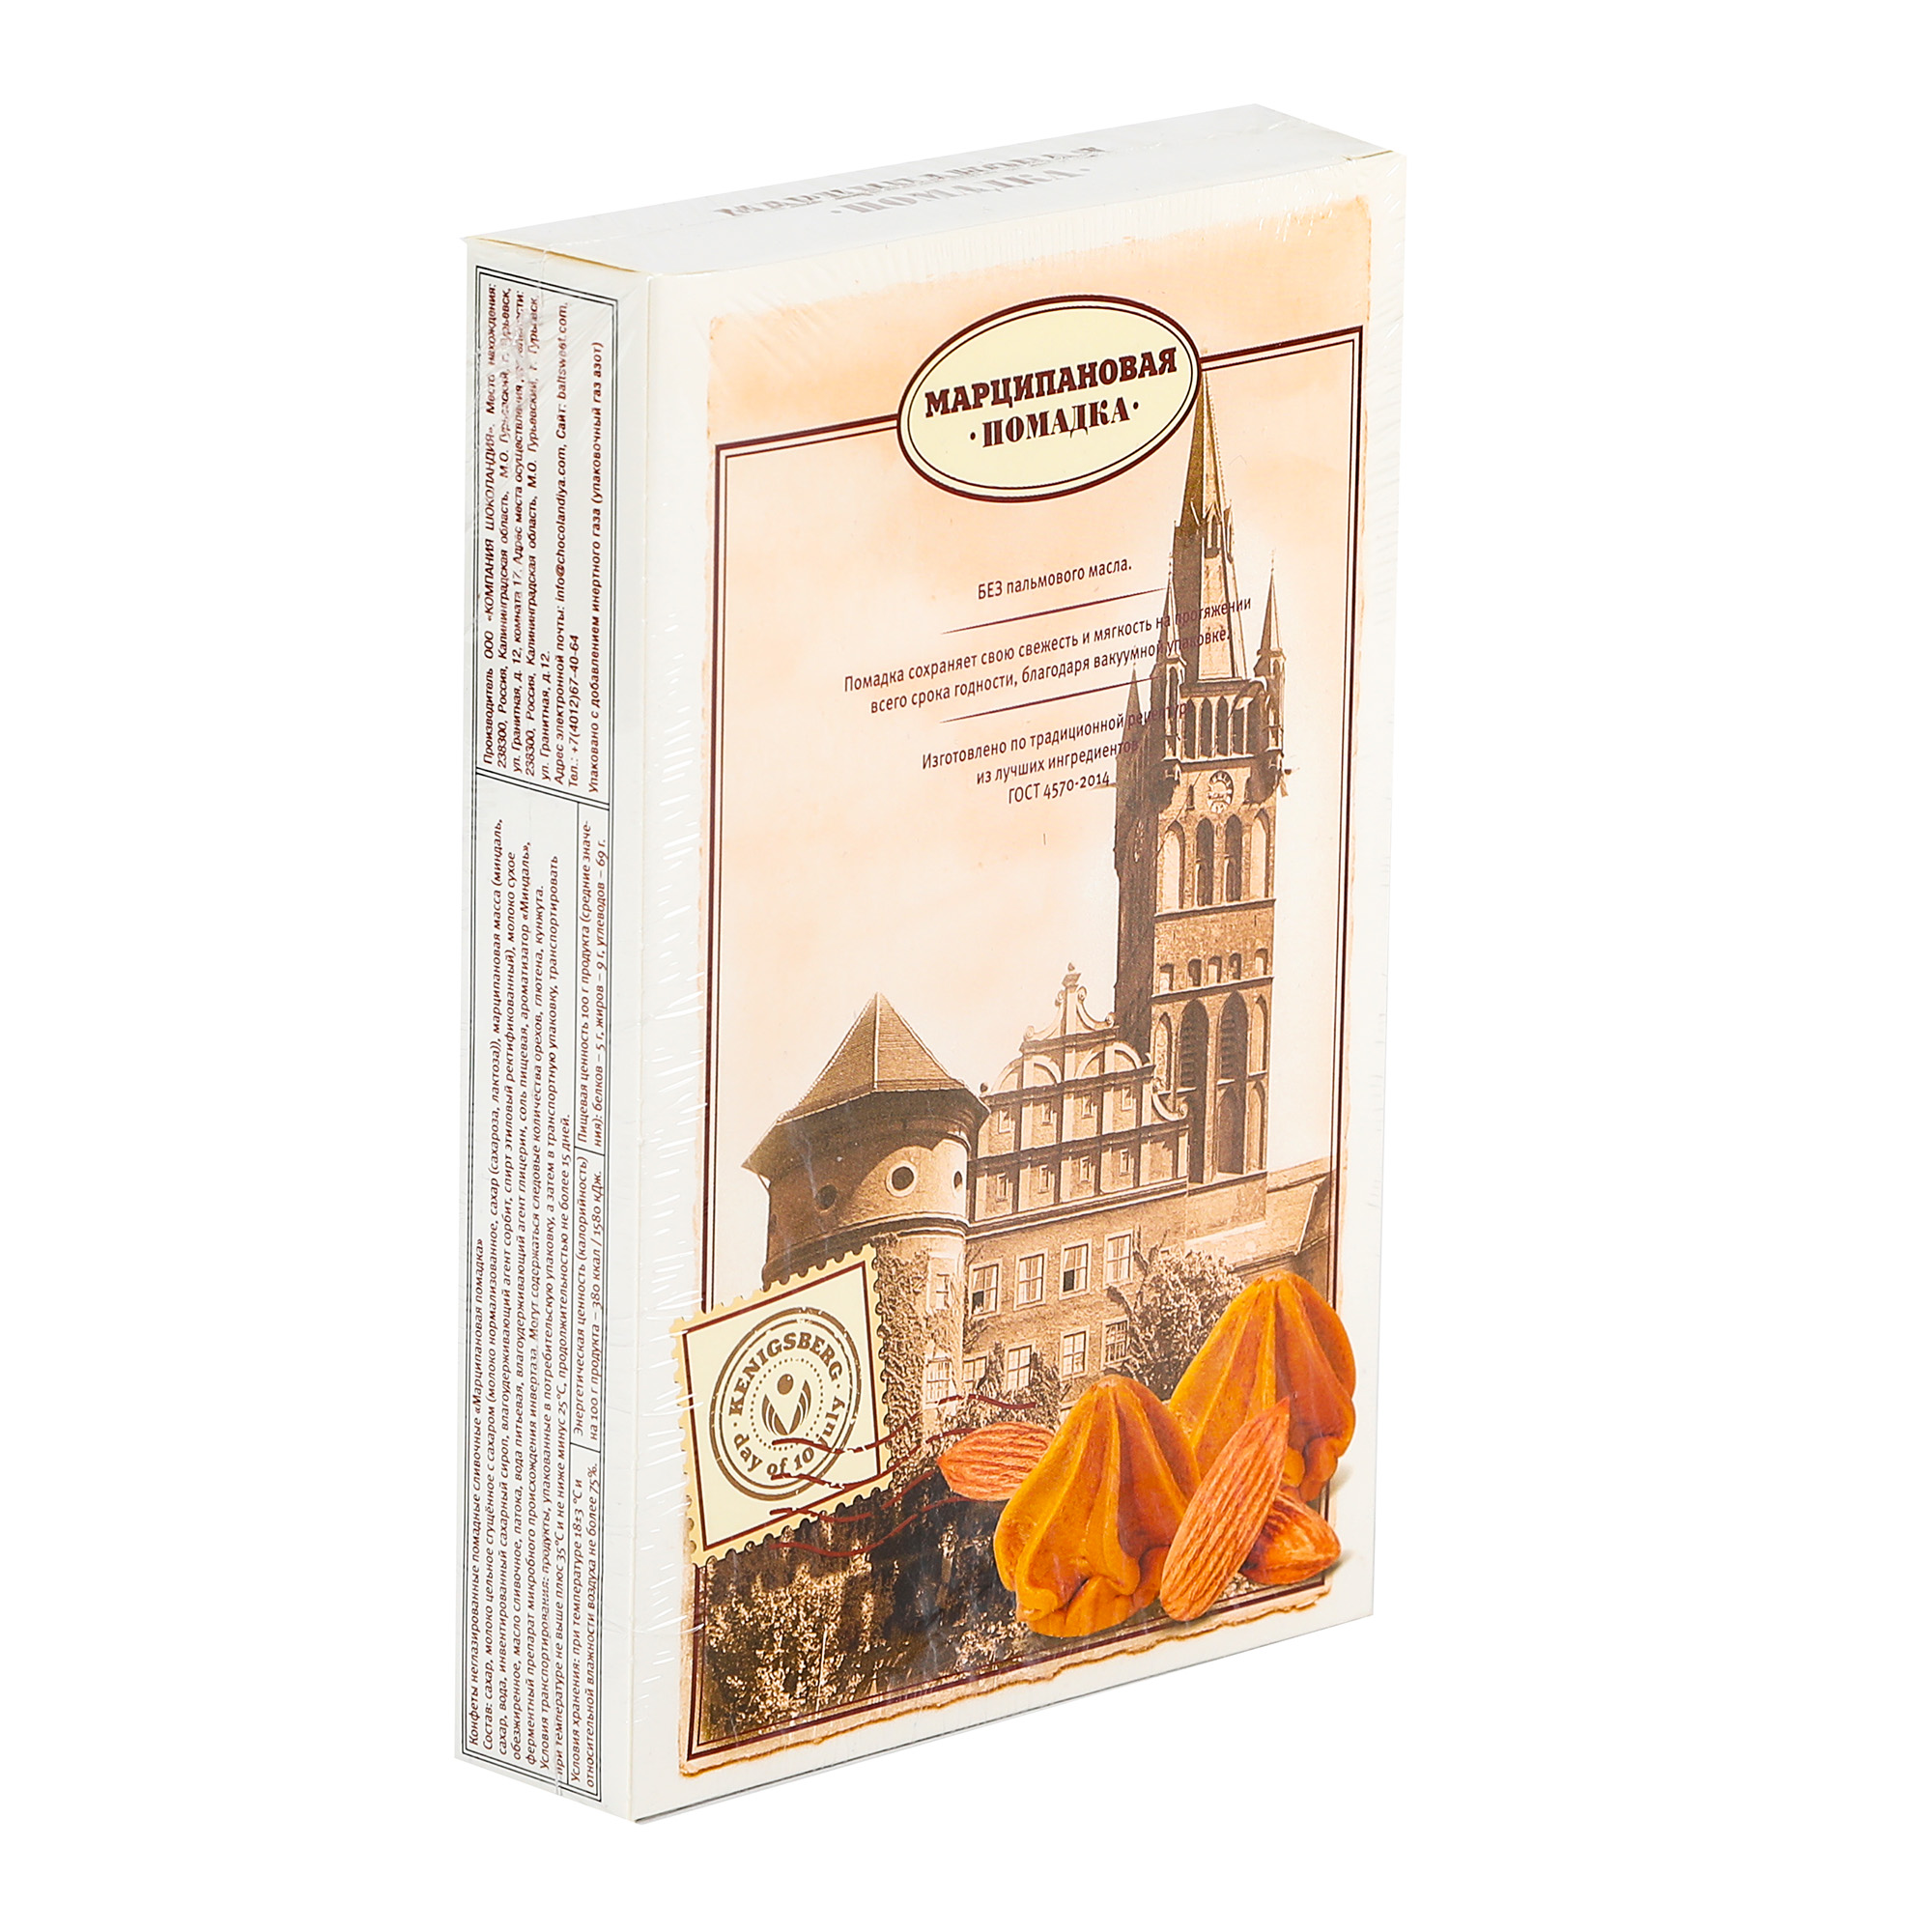 Конфеты Компания Шоколандия помадка Kenigsberg, 150 г конфеты lindt lindor серебряный корнет ассорти 200 гр